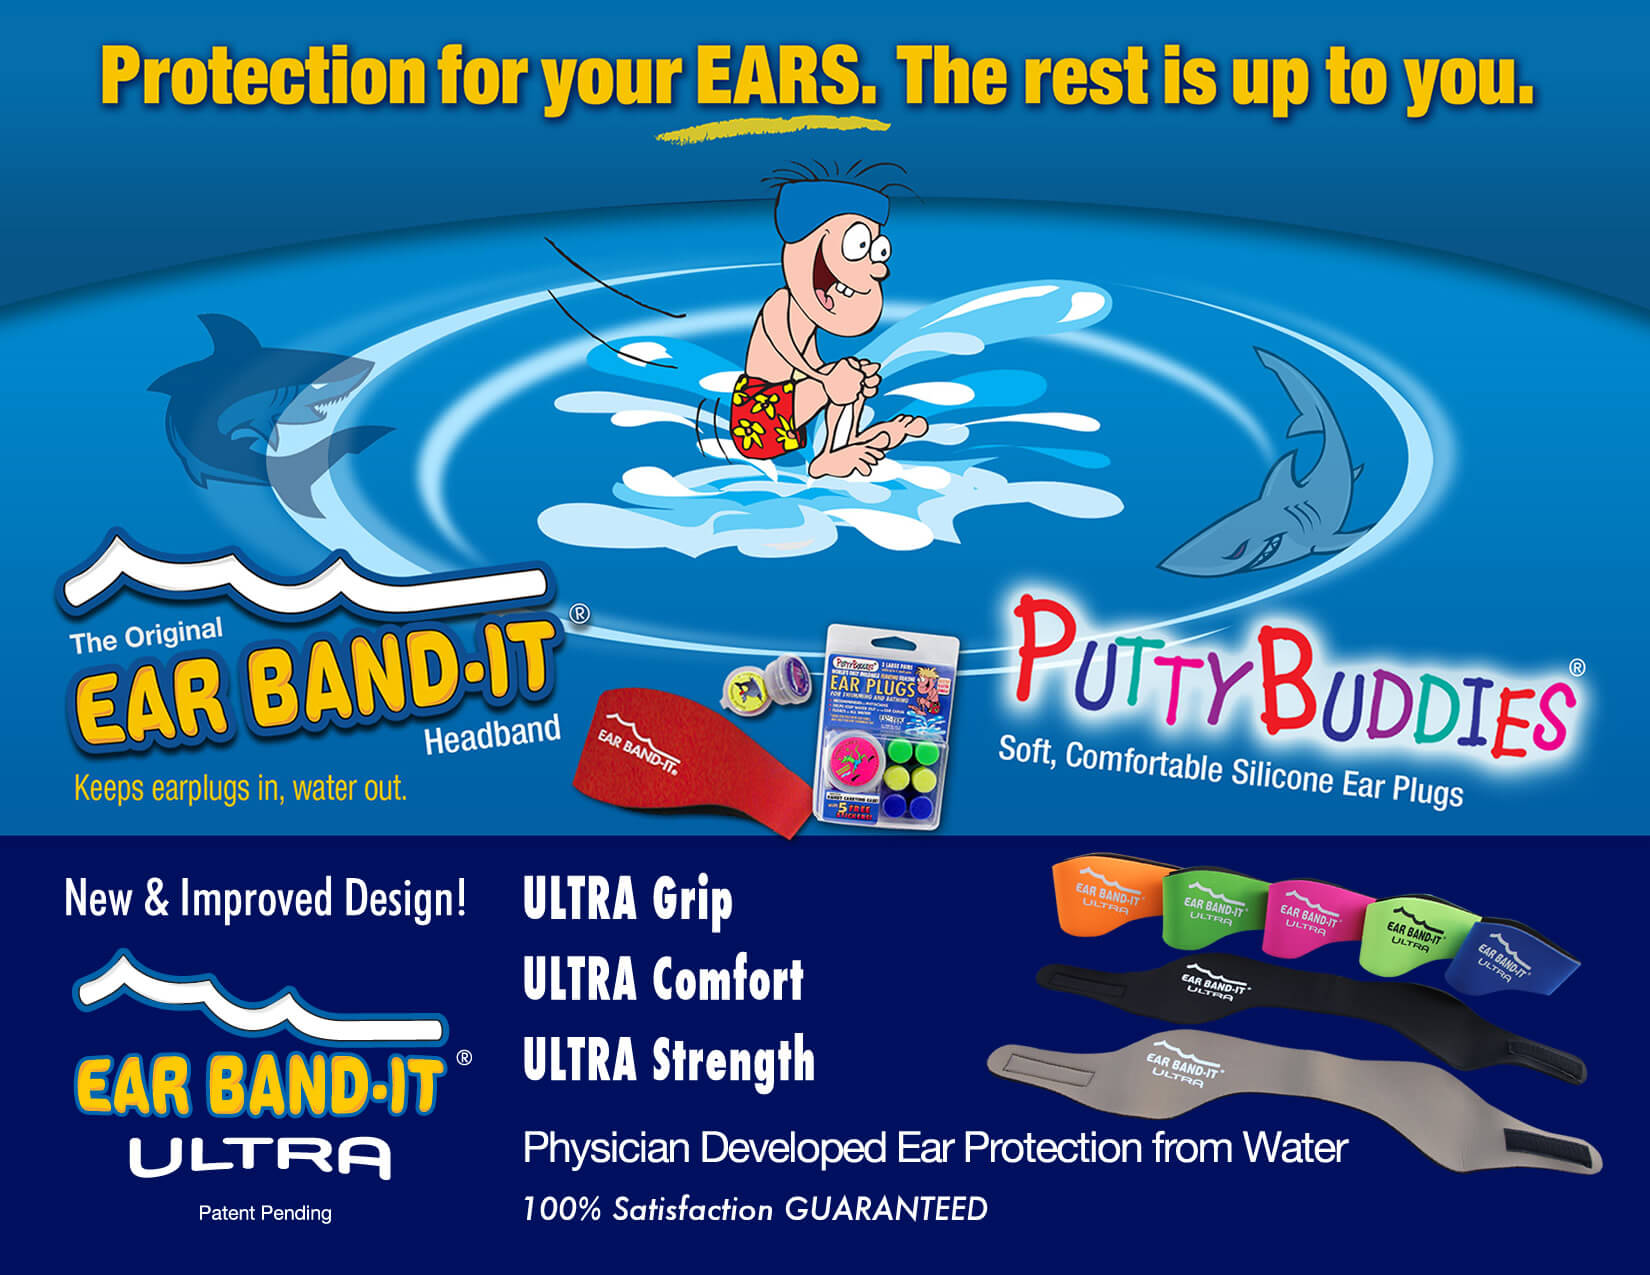 安価 EAR BAND-IT パティ バディーズ パティバディーズ 3色セット 耳栓 Putty Buddies Silicon Plug 3pr 